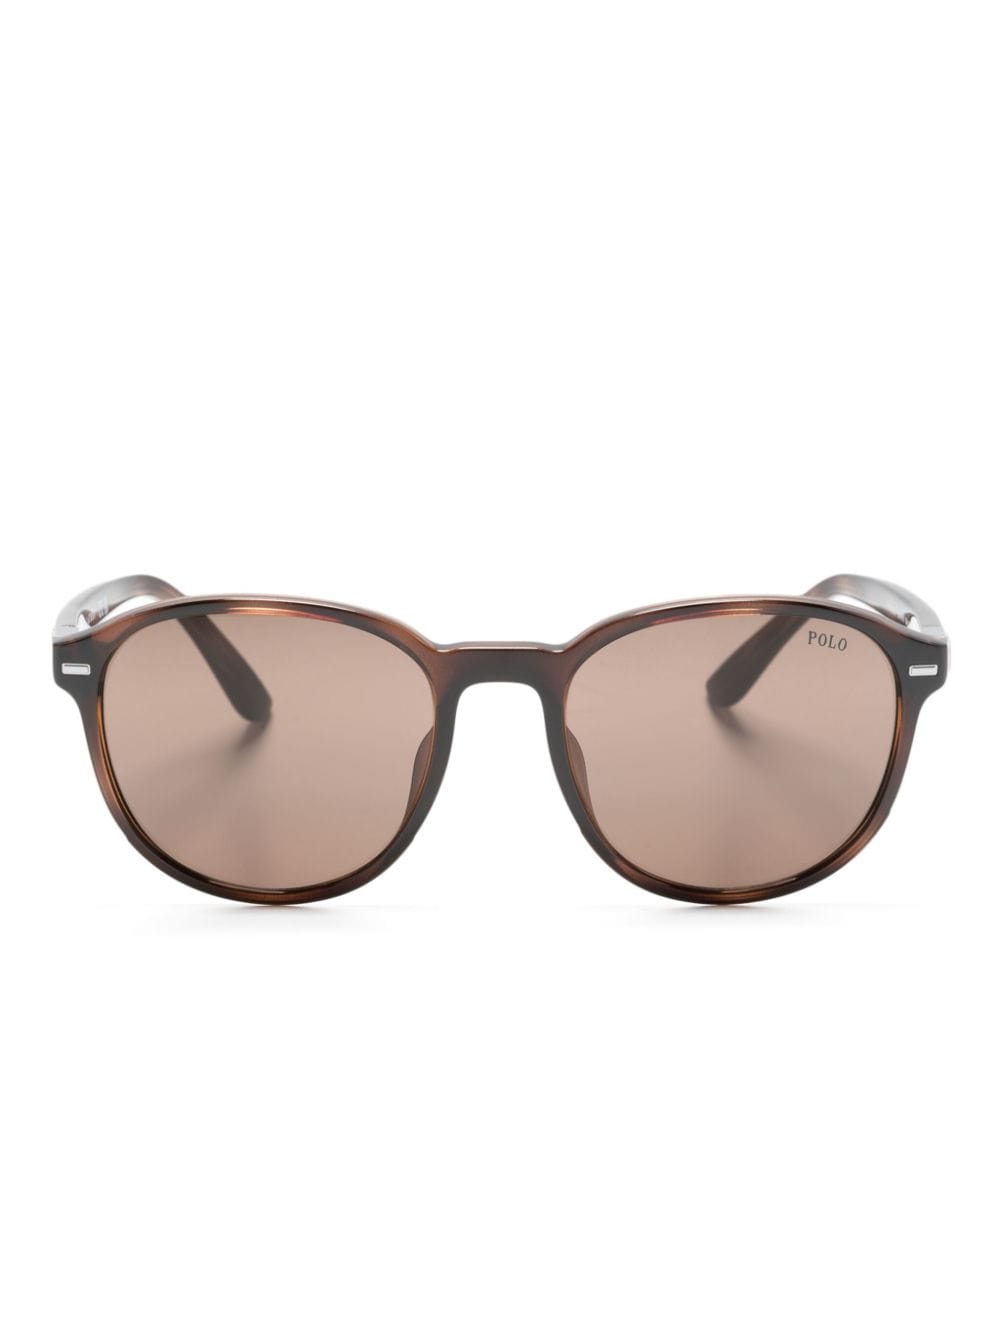 round-frame transparent sunglasses